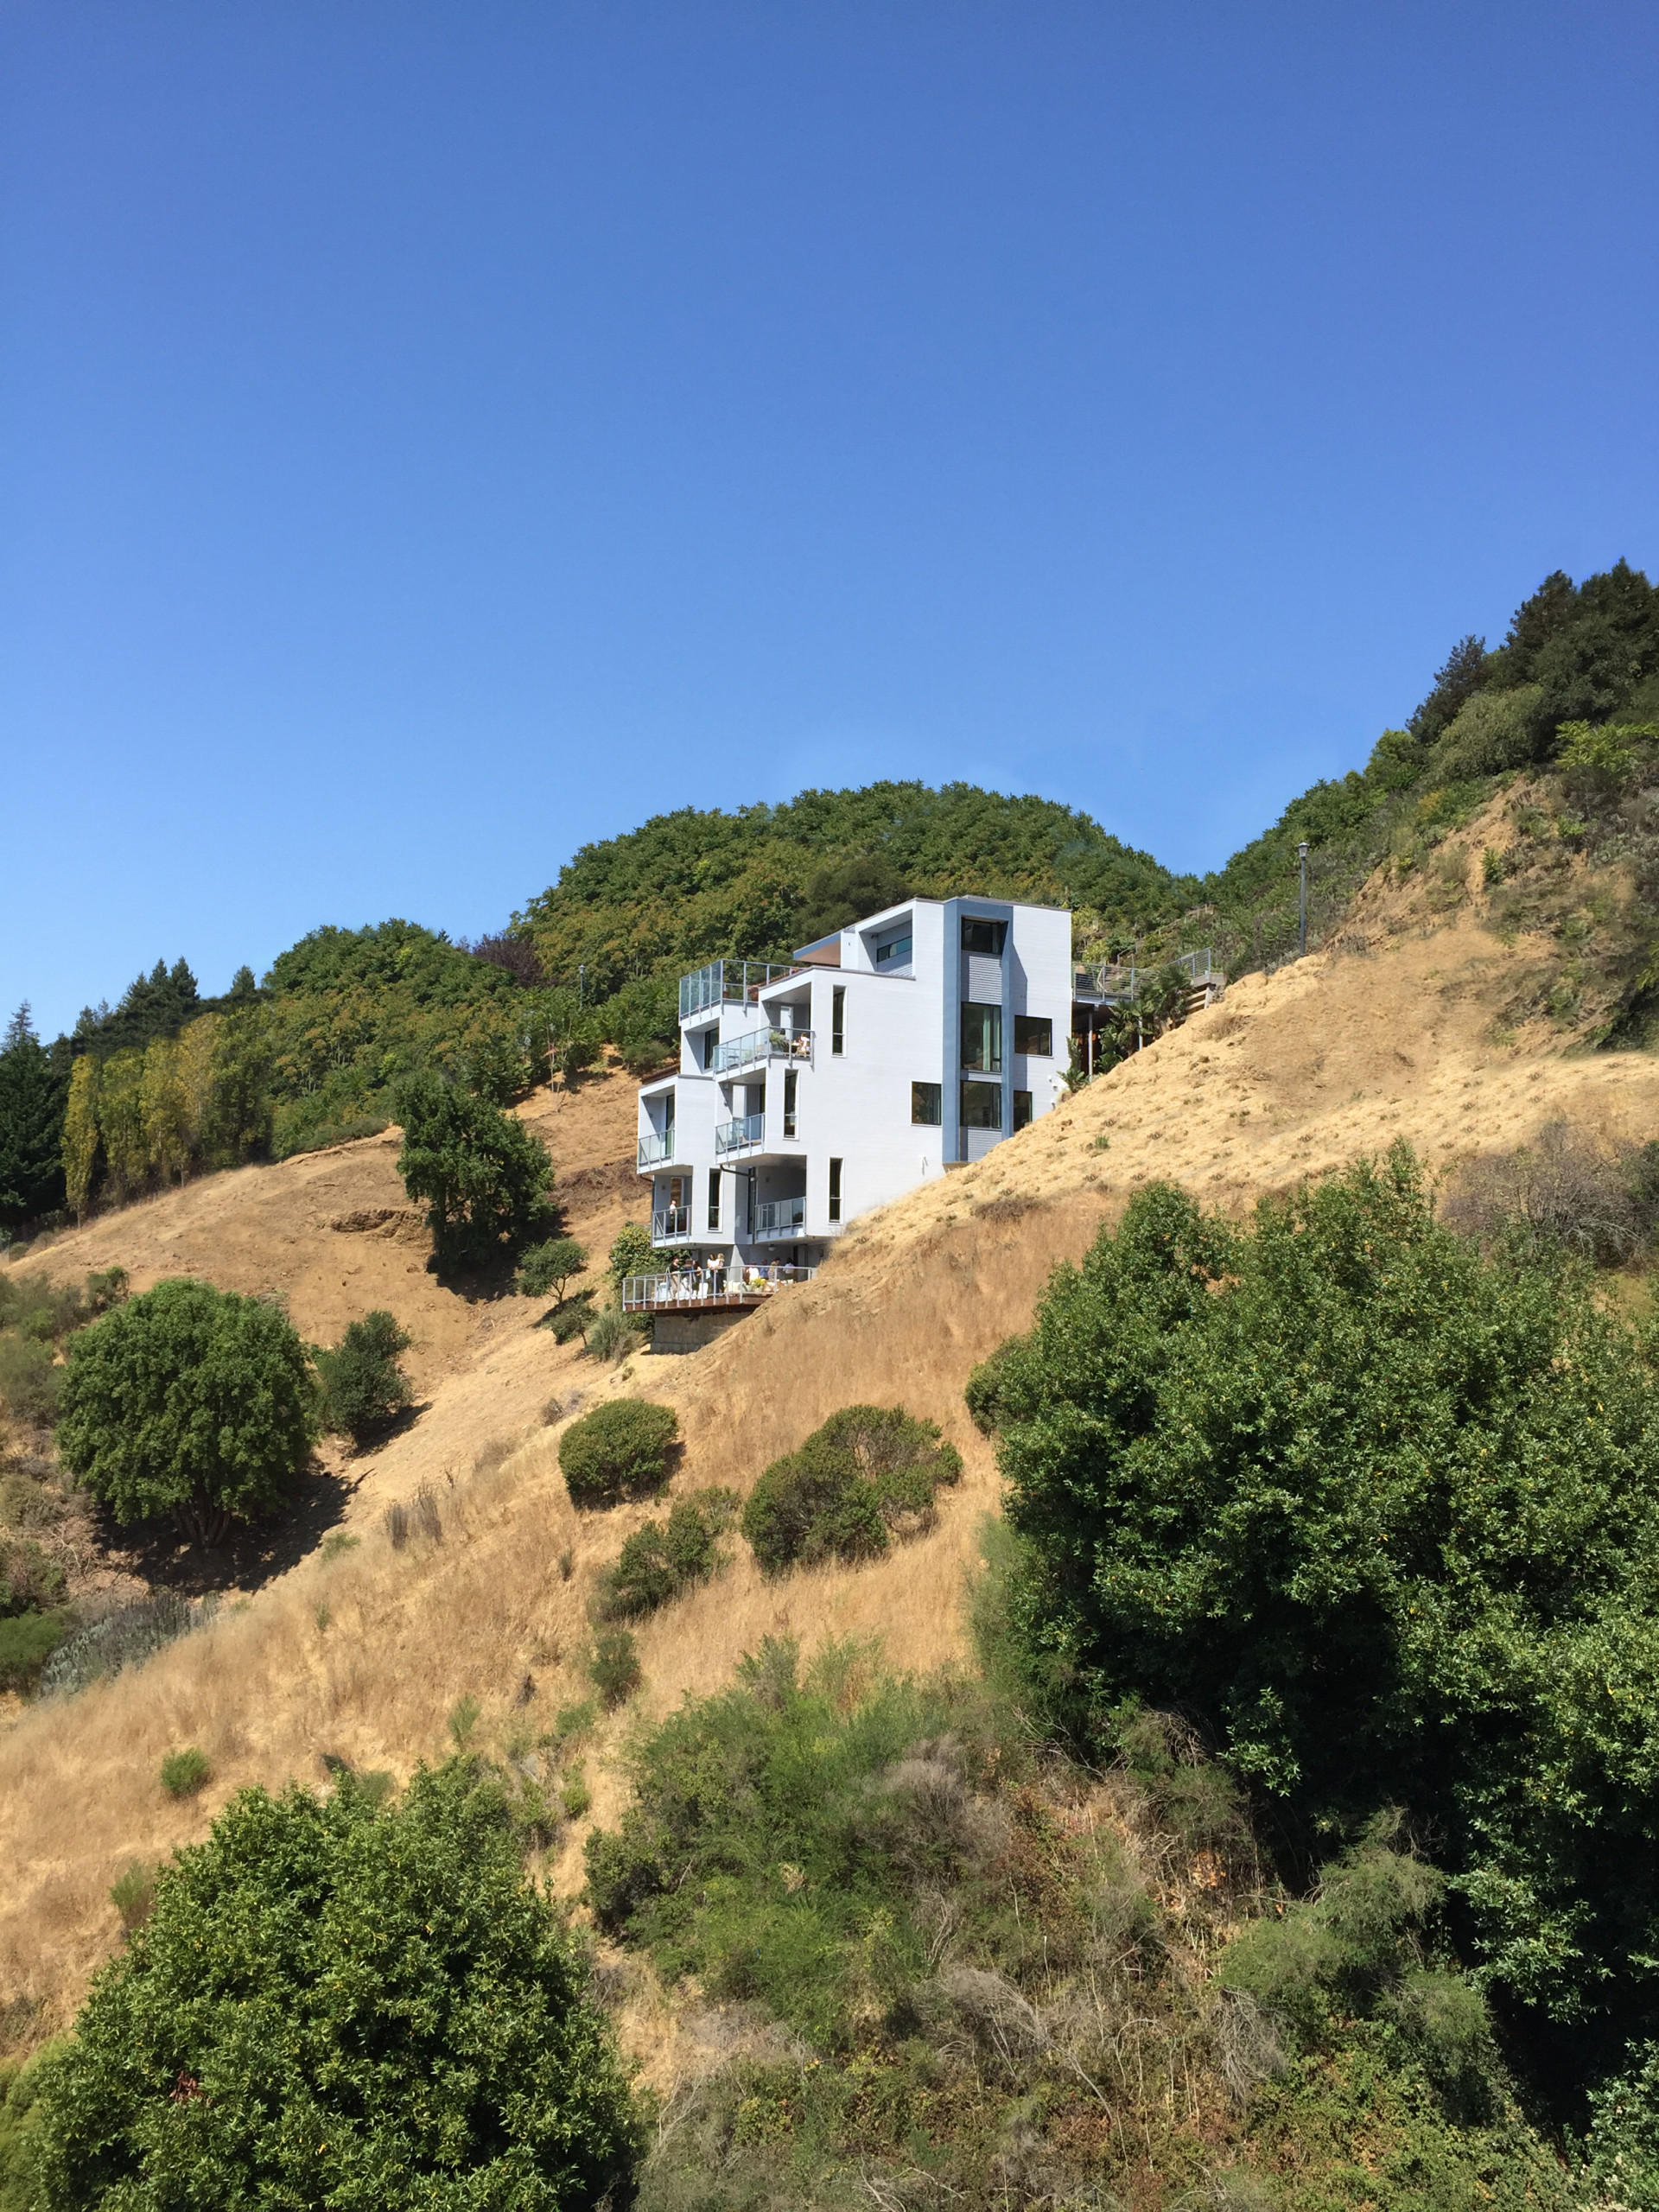 Modern Hillside Home